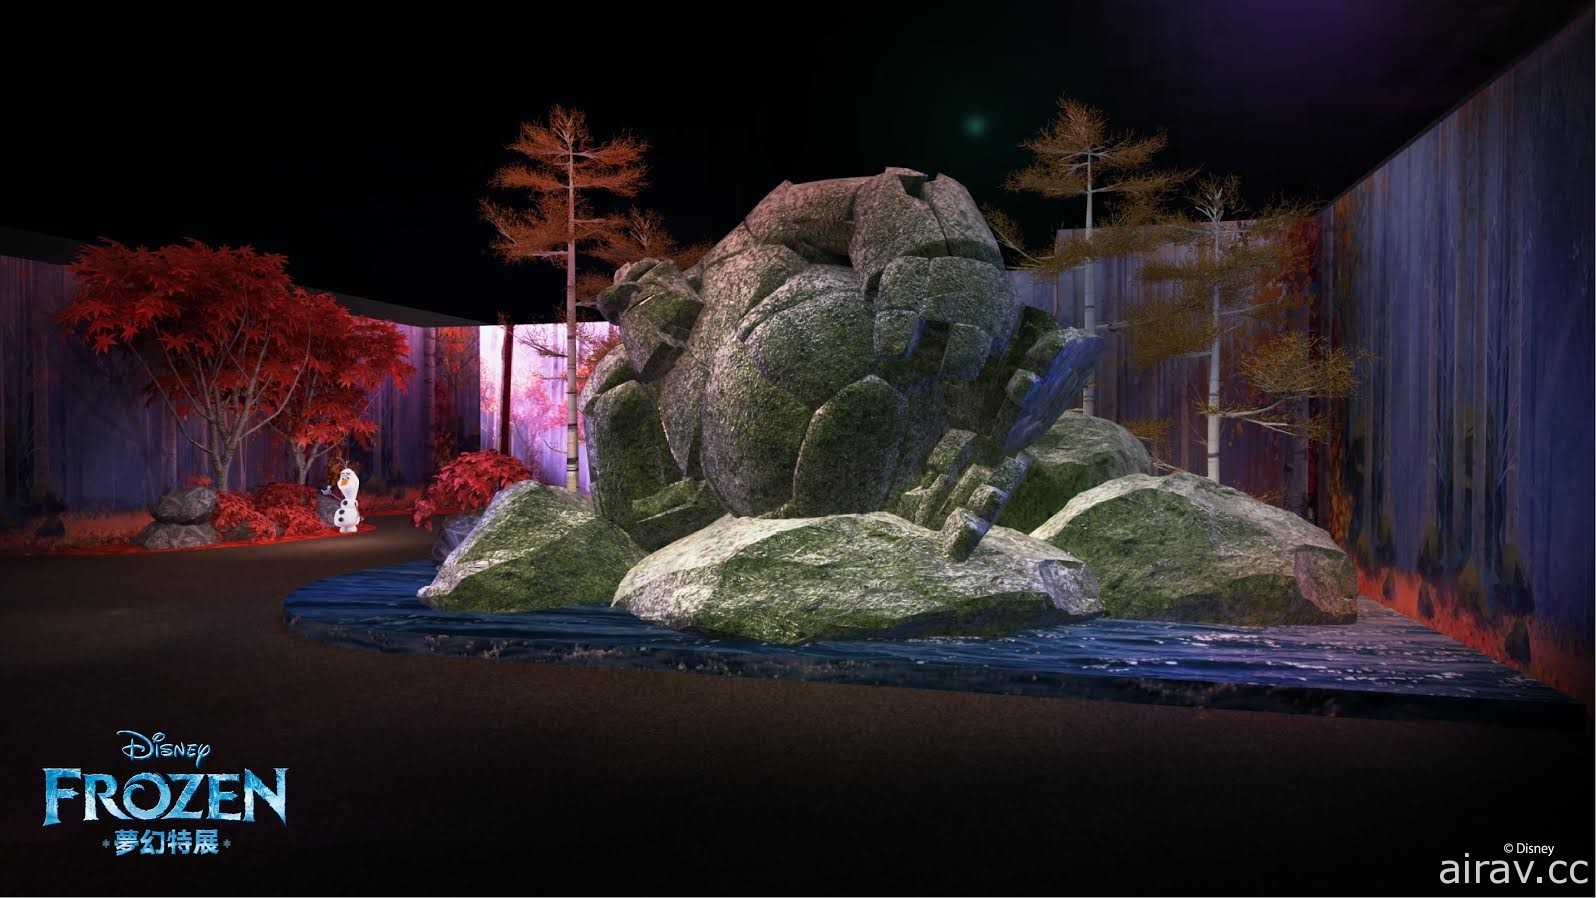 “FROZEN 冰雪奇缘梦幻特展”12 月在台揭幕 还原经典场景 科技互动体验冰雪幻境